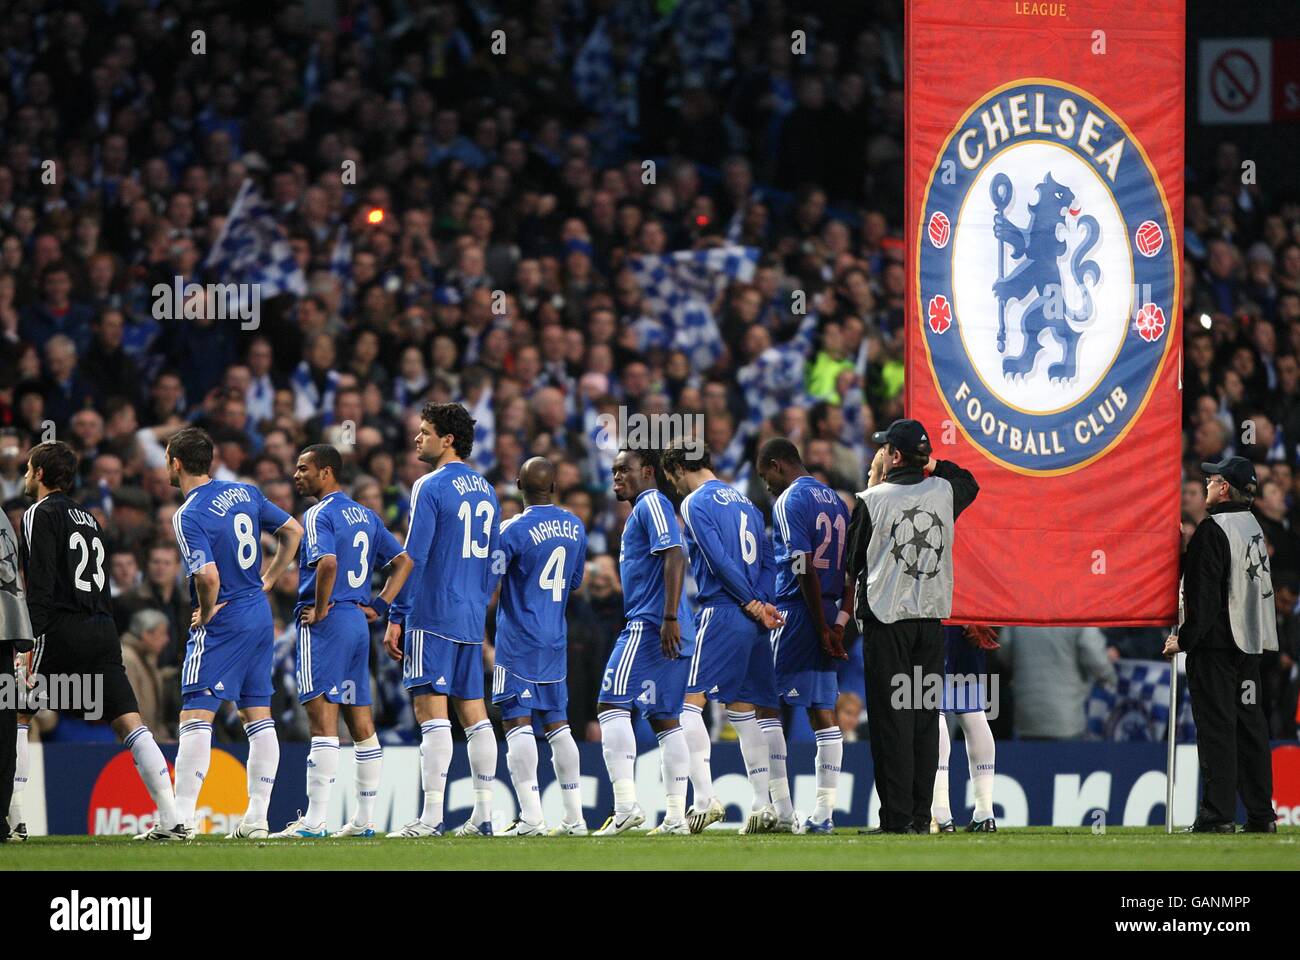 Football - UEFA Champions League - quart de finale - deuxième étape - Chelsea / Fenerbahce - Stamford Bridge. Chelsea s'arrête avant le début Banque D'Images